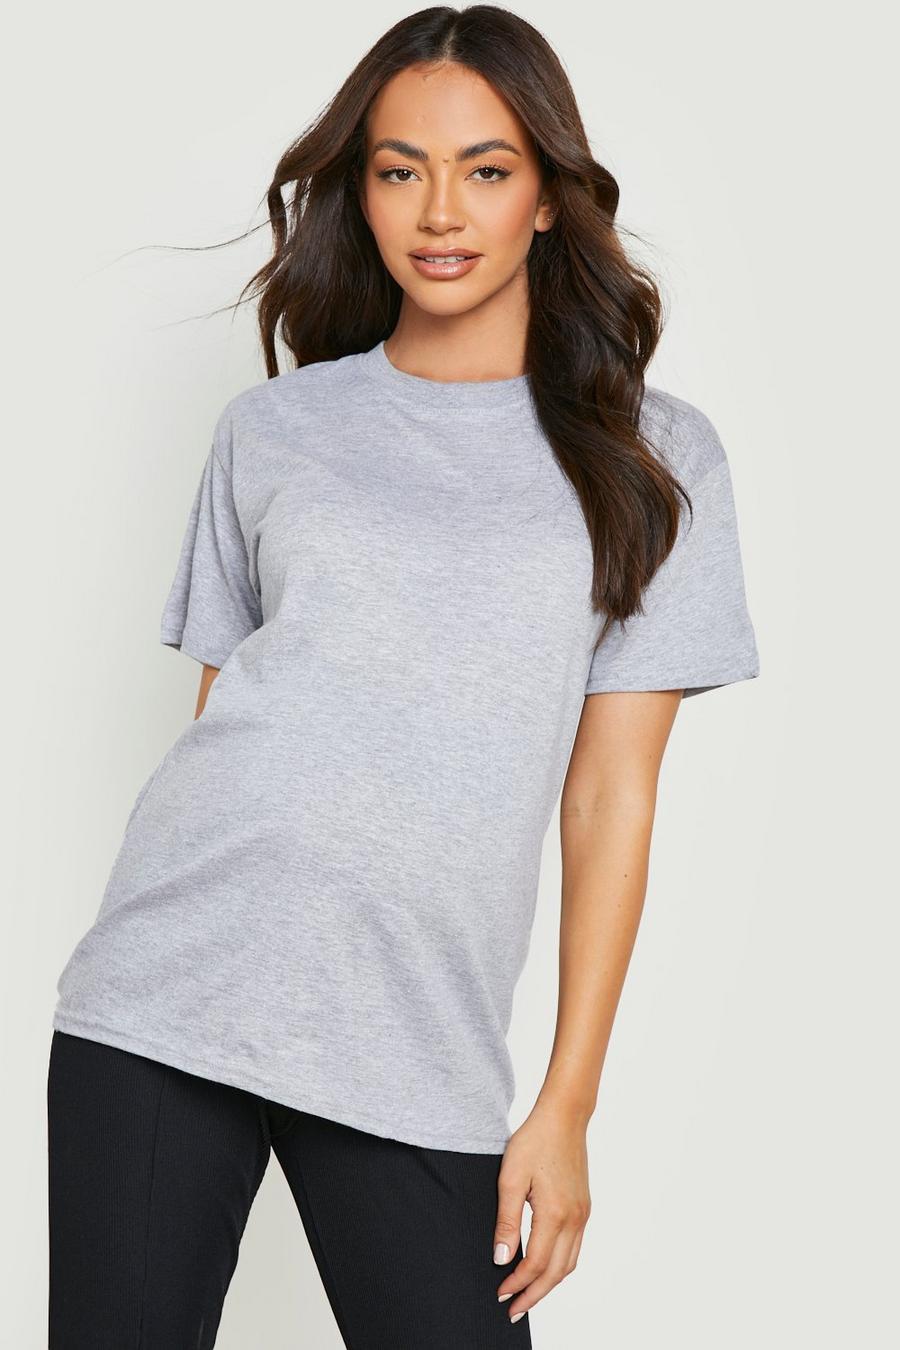 Umstandsmode Baumwoll T-Shirt, Grey marl grau